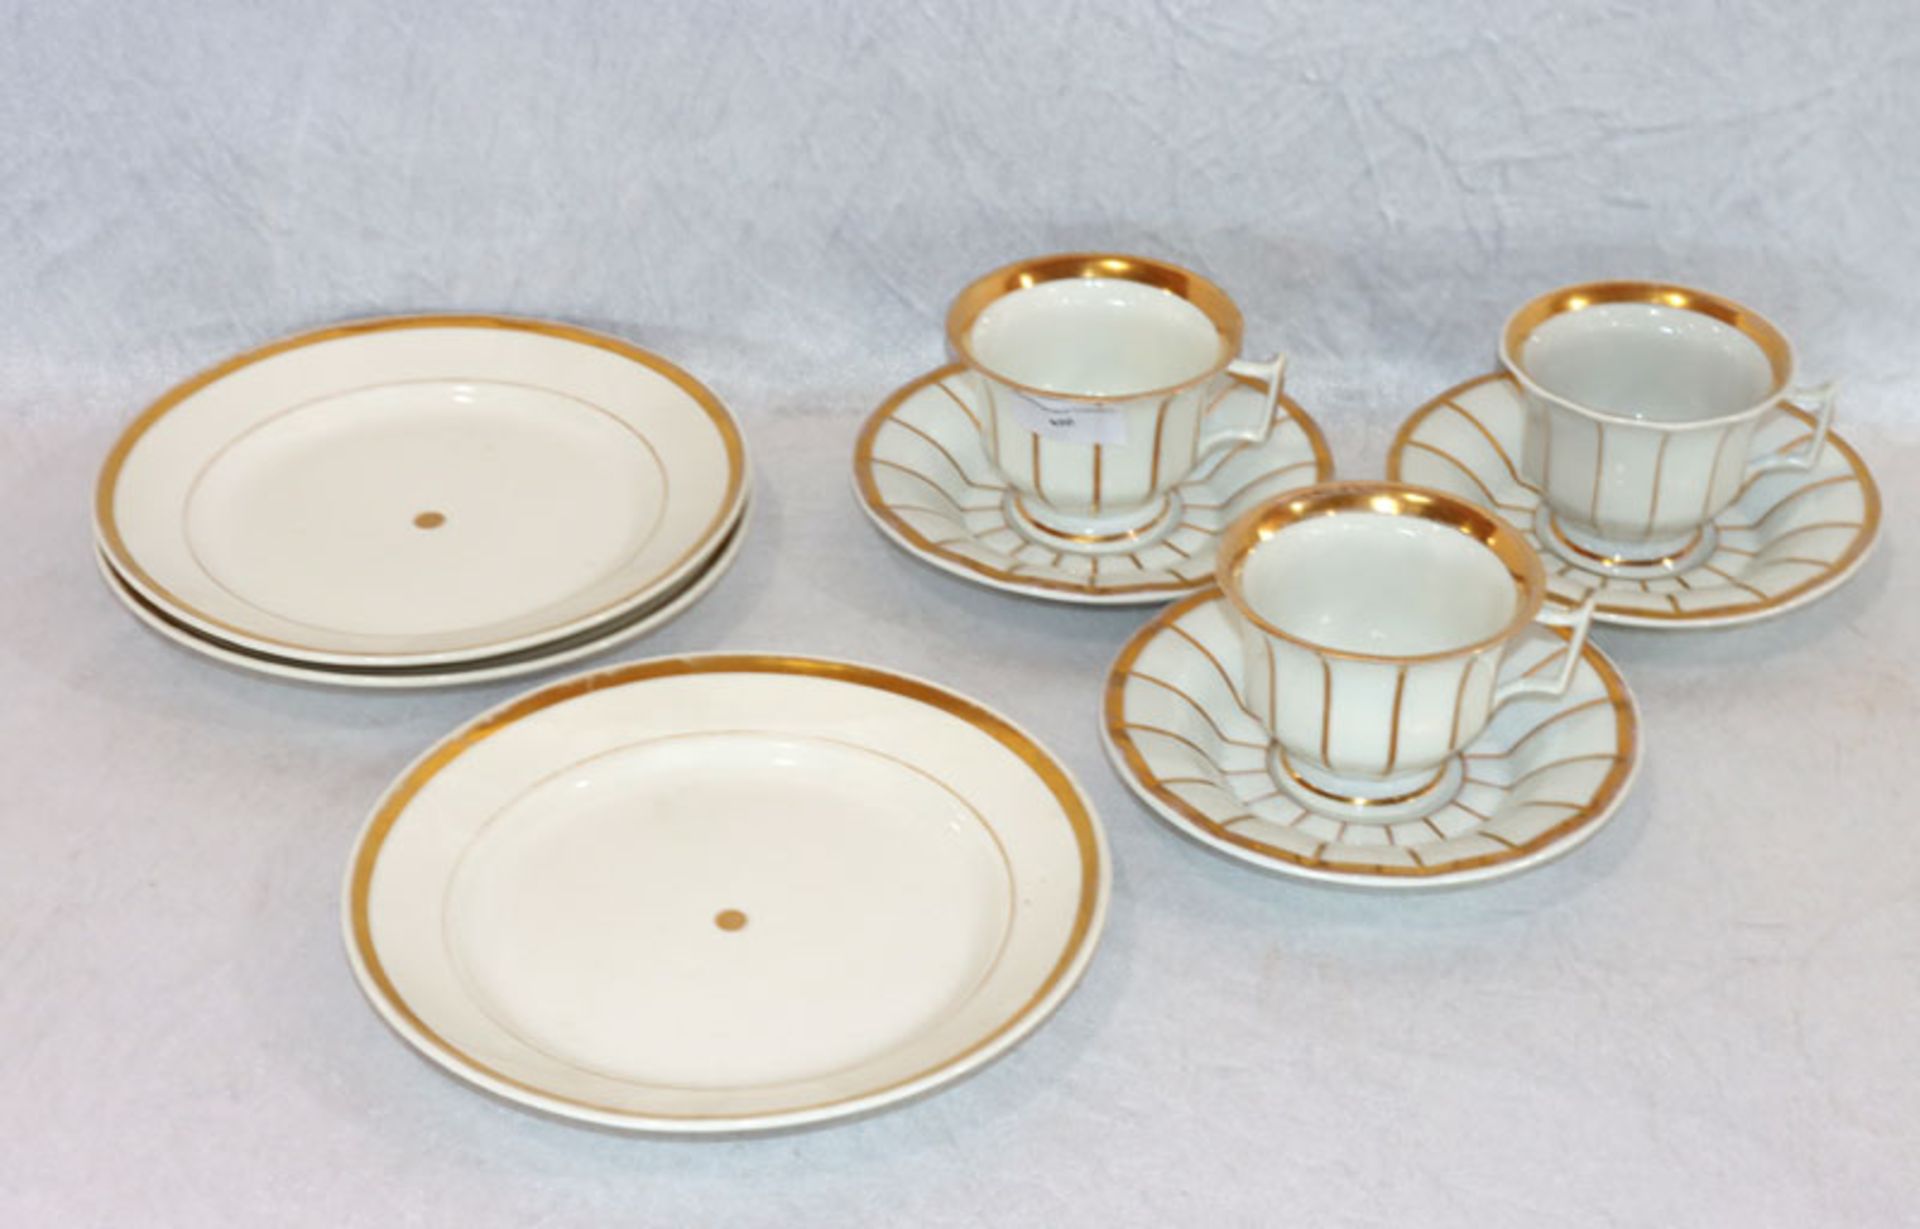 3 Porzellan Kaffee-Gedecke mit Golddekor, 19. Jahrhundert, teils berieben, Gebrauchsspuren